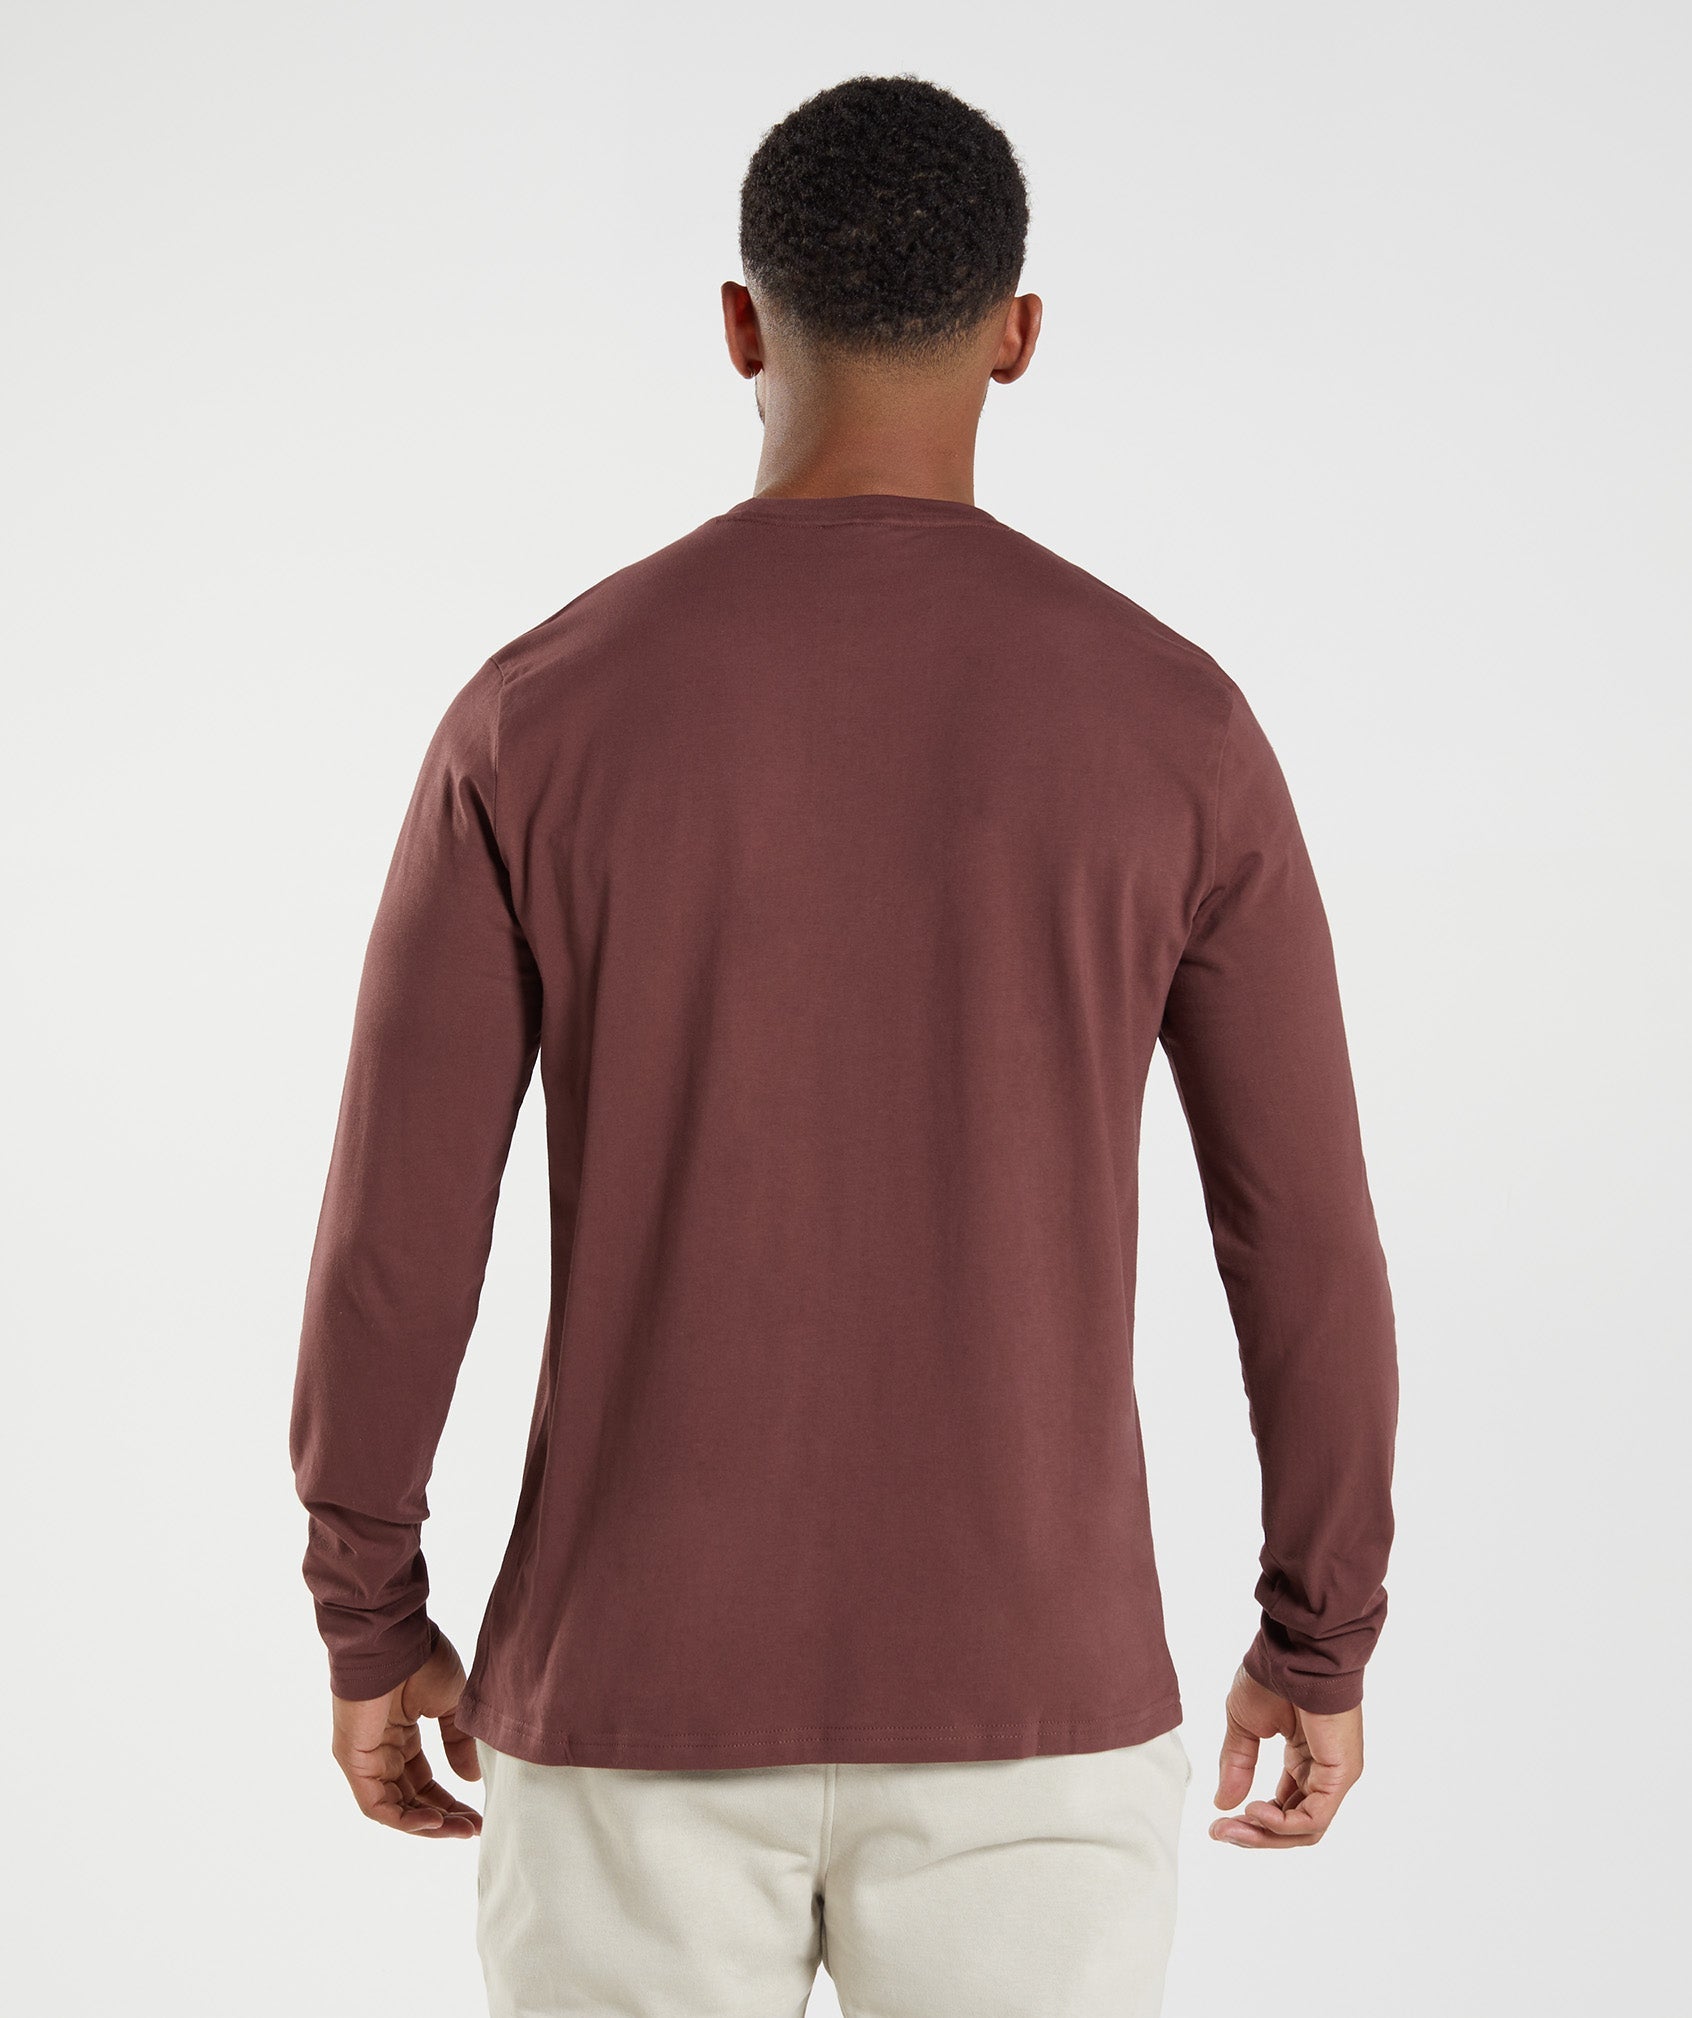 Gymshark Crest Long Sleeve T-Shirt - Cherry Brown